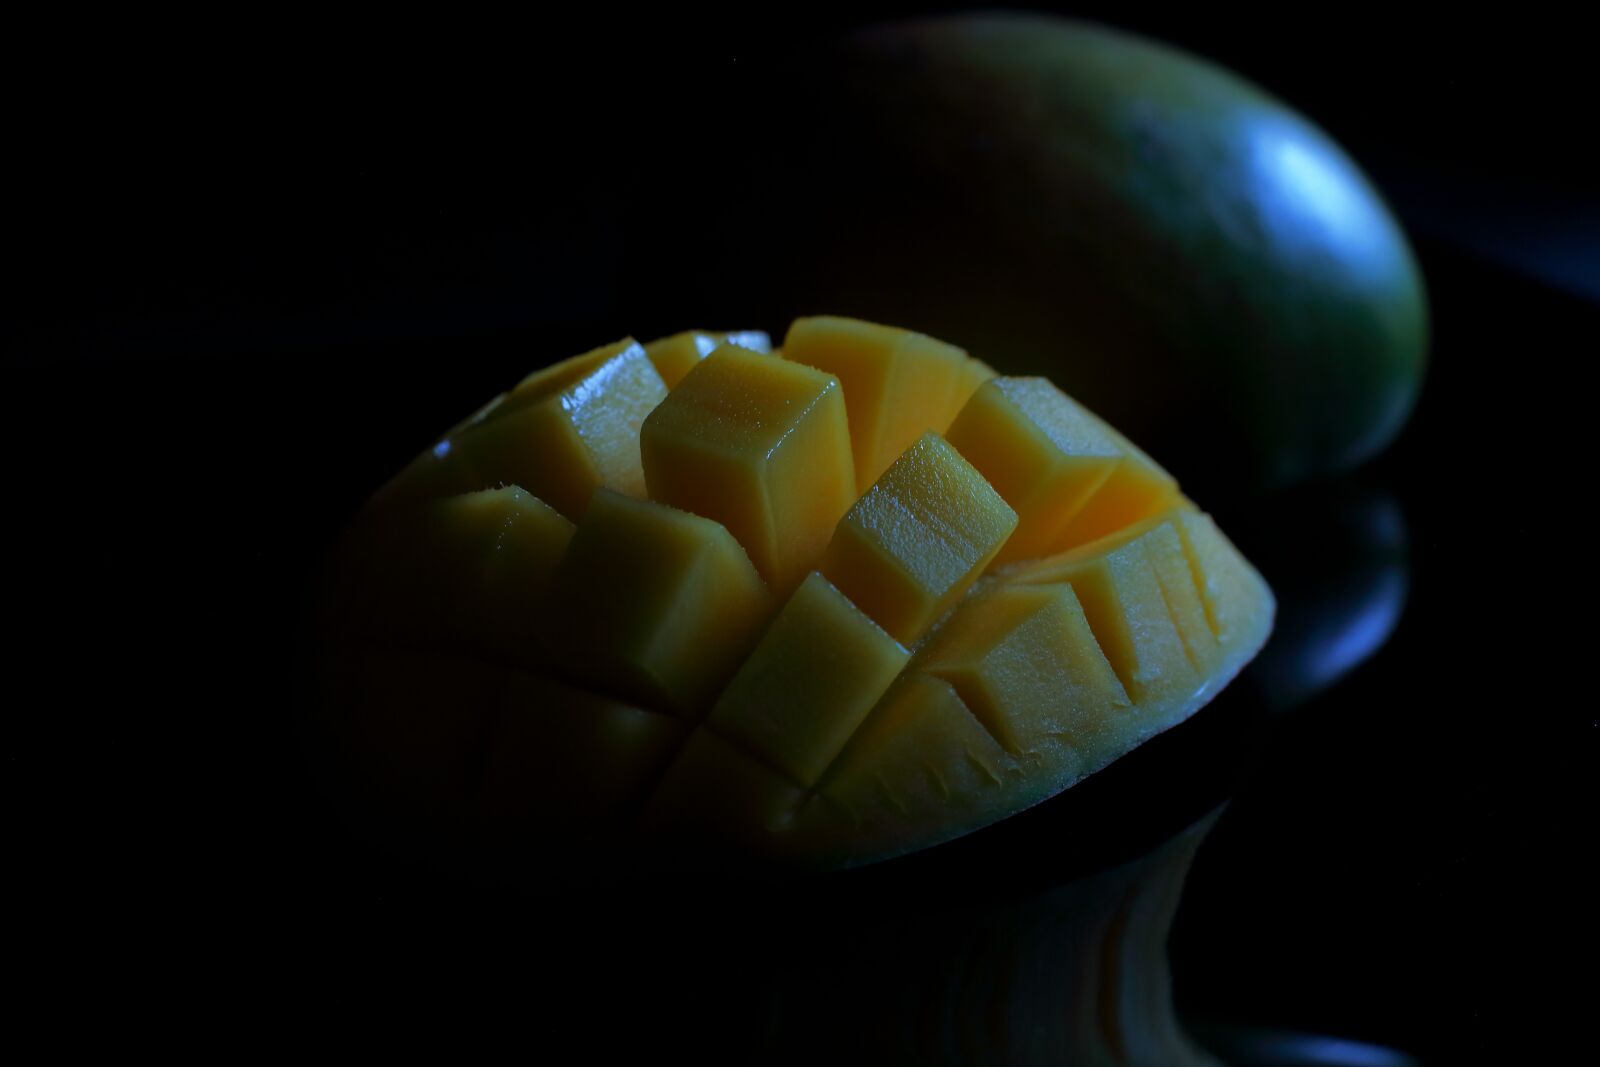 Canon EOS 6D sample photo. Mango, delicious, yellow photography